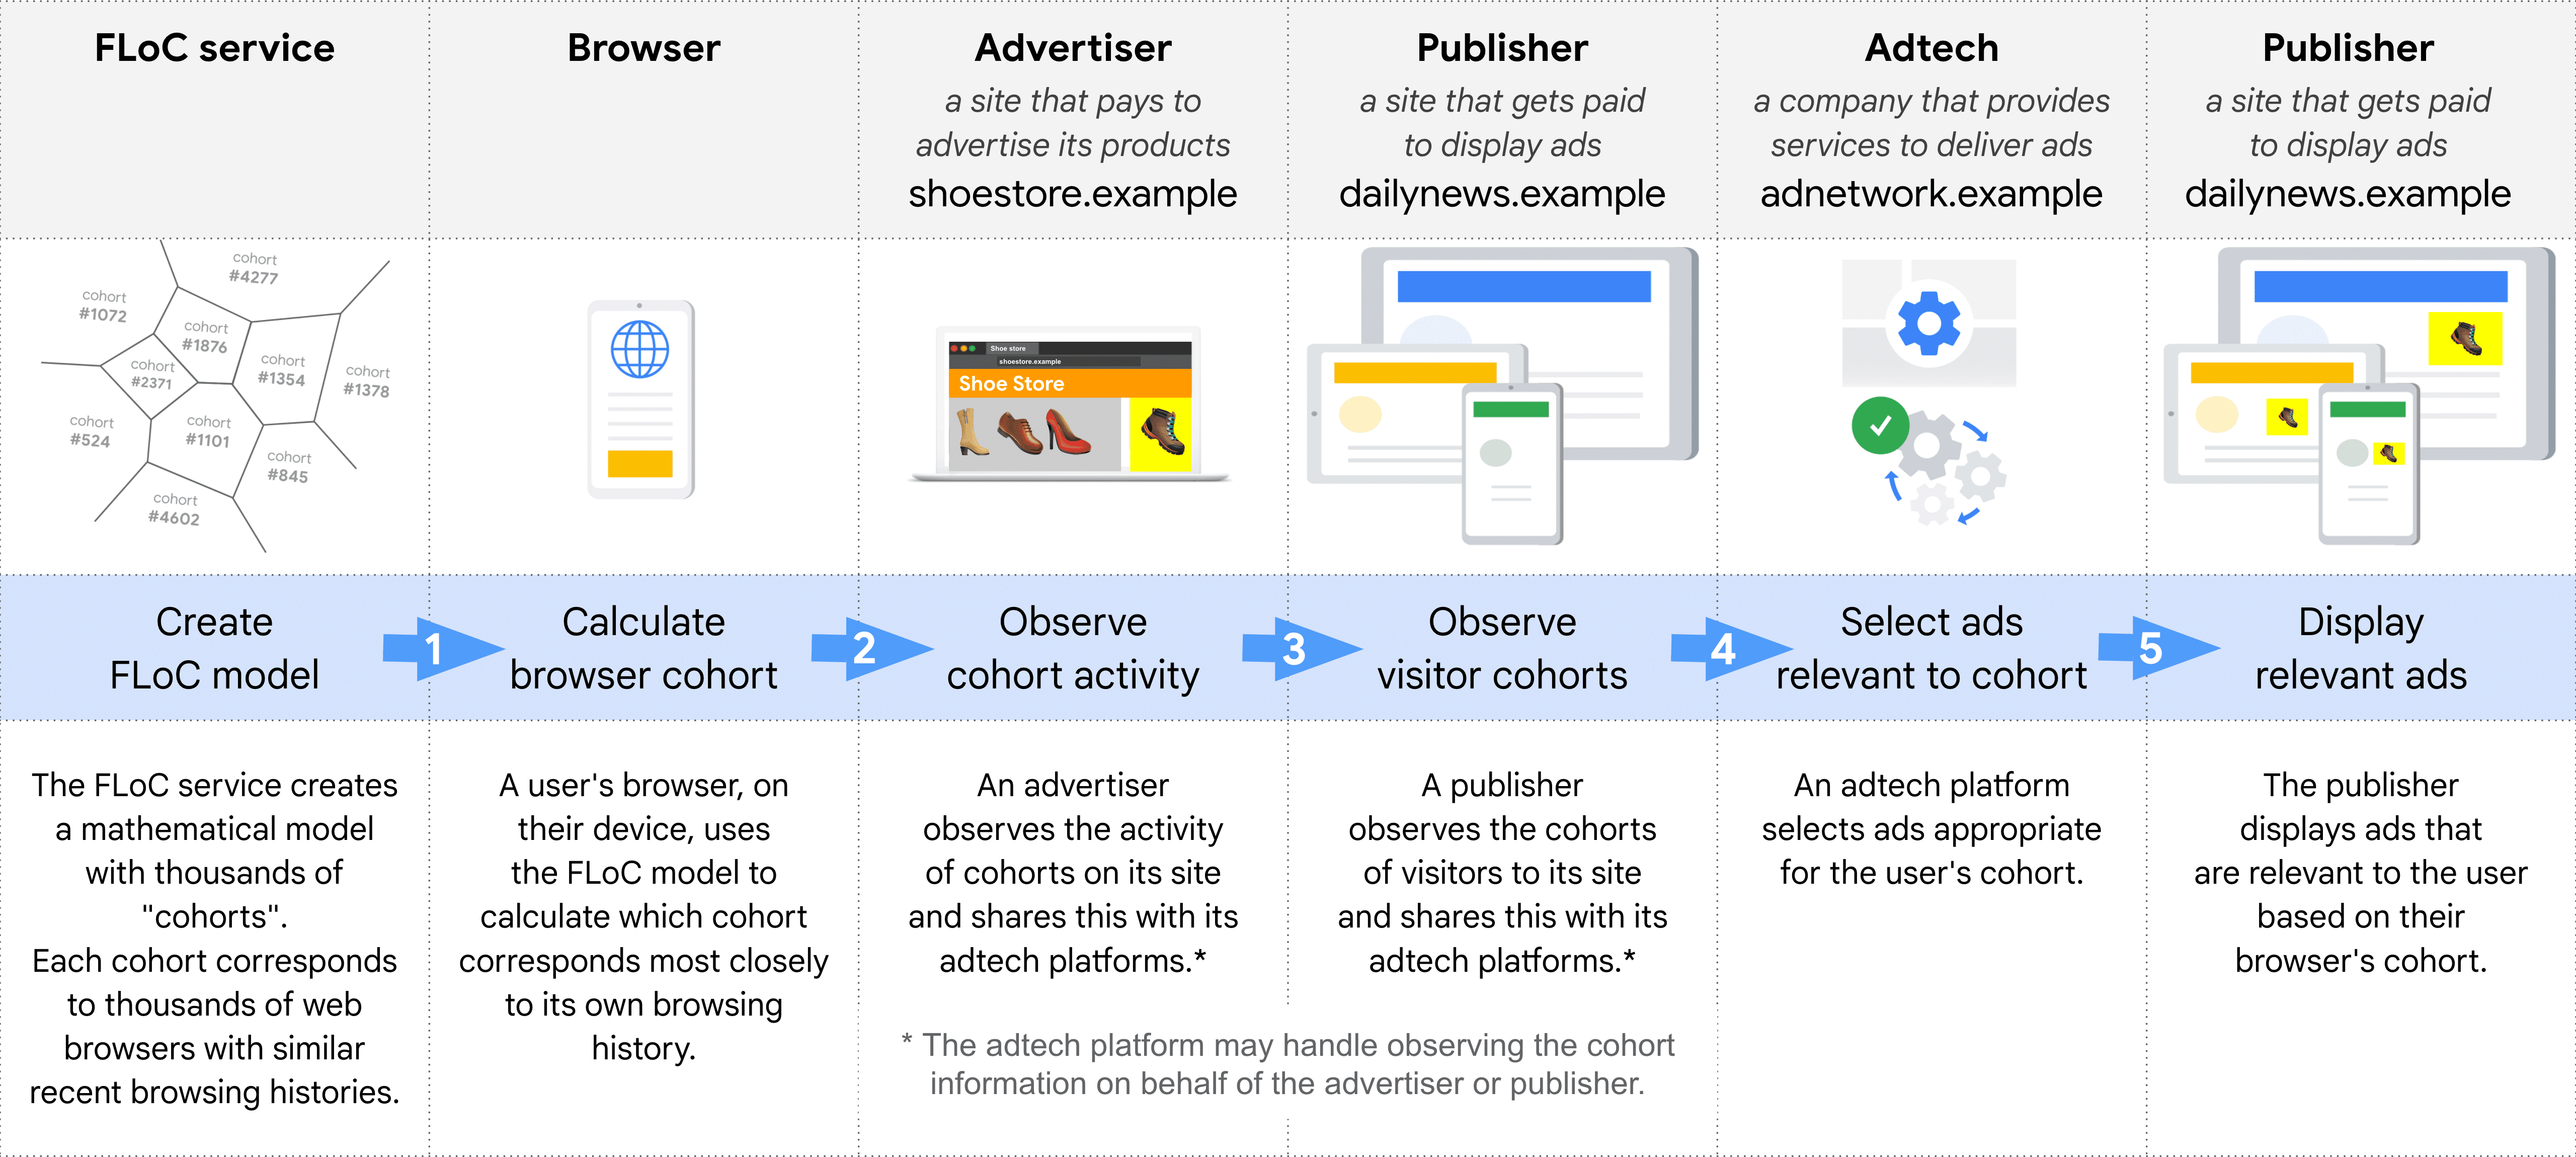 Sơ đồ cho thấy các vai trò theo từng bước trong việc chọn và phân phối quảng cáo bằng
  FLoC: dịch vụ FLoC, Trình duyệt, Nhà quảng cáo, Nhà xuất bản (để quan sát nhóm thuần tập), Công nghệ quảng cáo,
  Nhà xuất bản (để hiển thị quảng cáo)